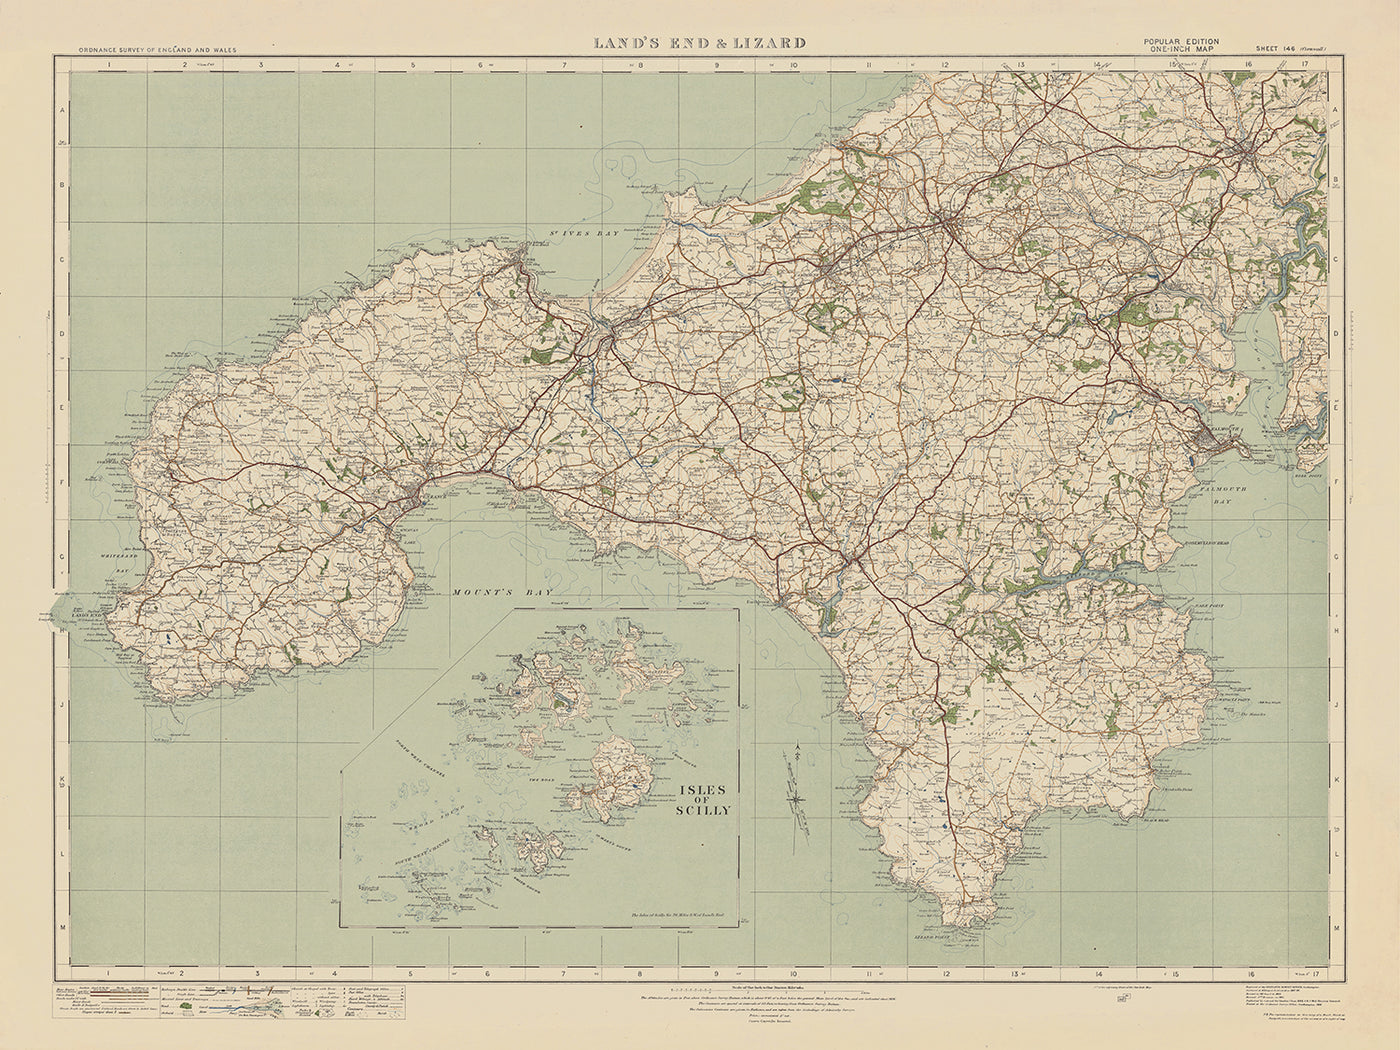 Ancienne carte de l'Ordnance Survey - Feuille 146 Lands End & Lizard, 1919-1926 : Truro, Falmouth, St Ives, Penzance, Helston, St Michael's Mount, Lizard Point